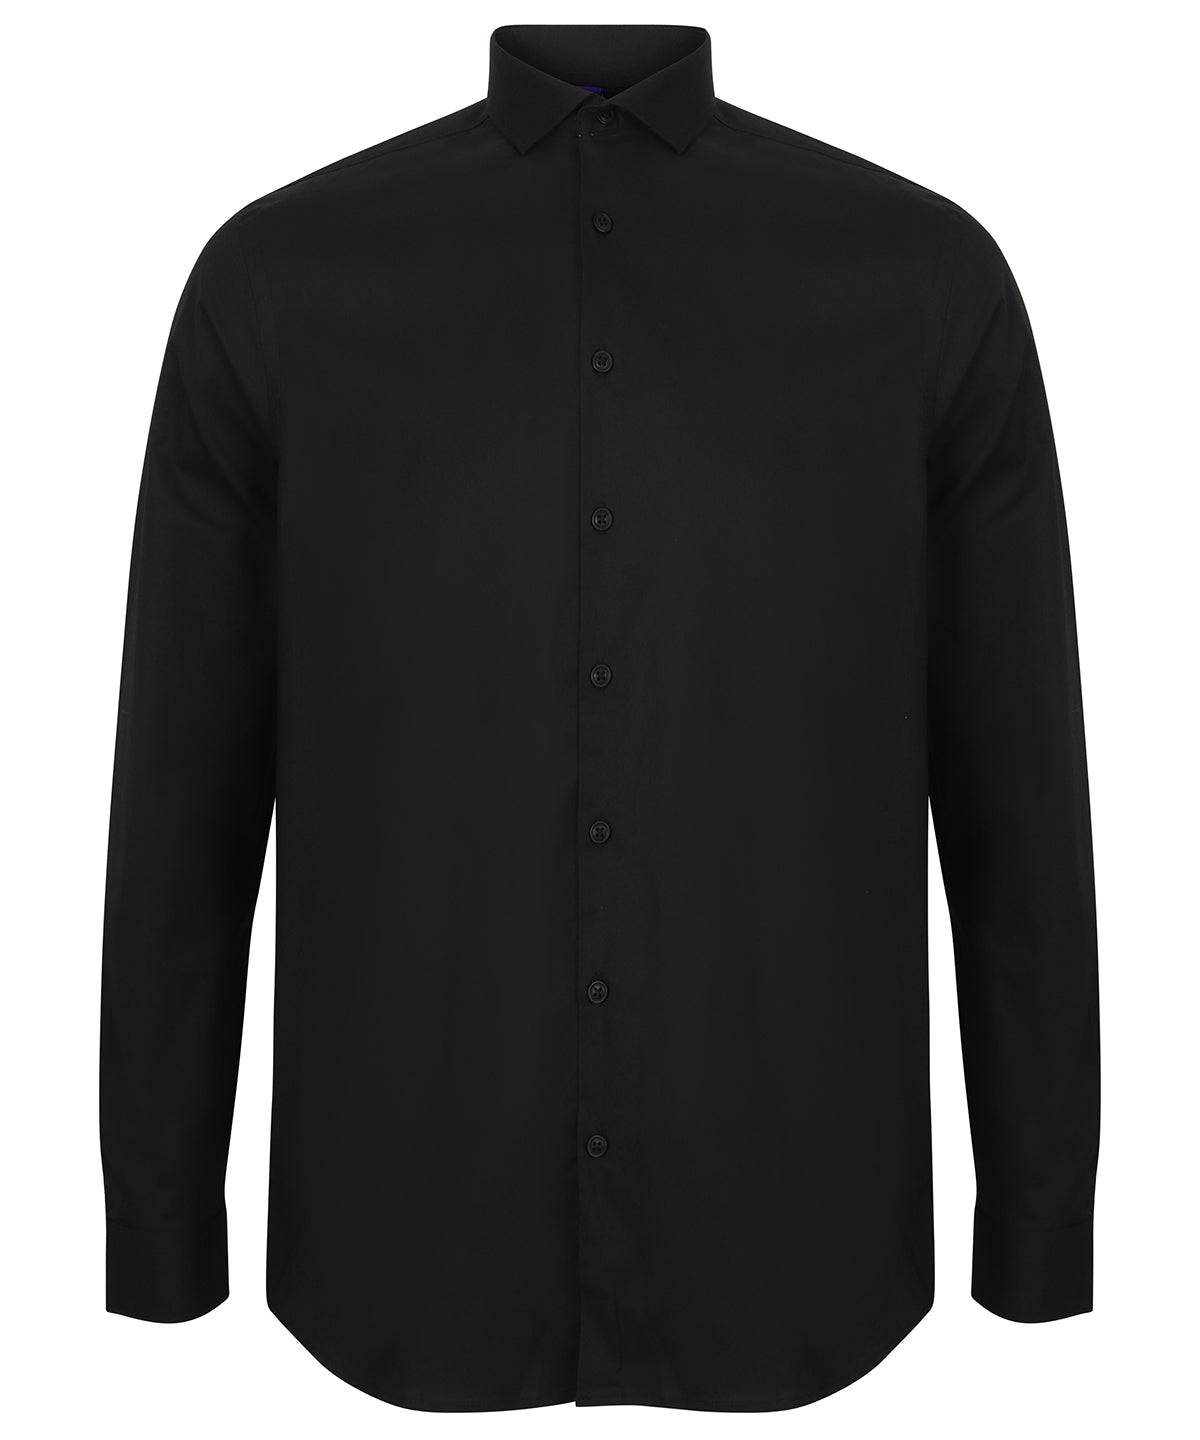 Black - Long sleeve stretch shirt